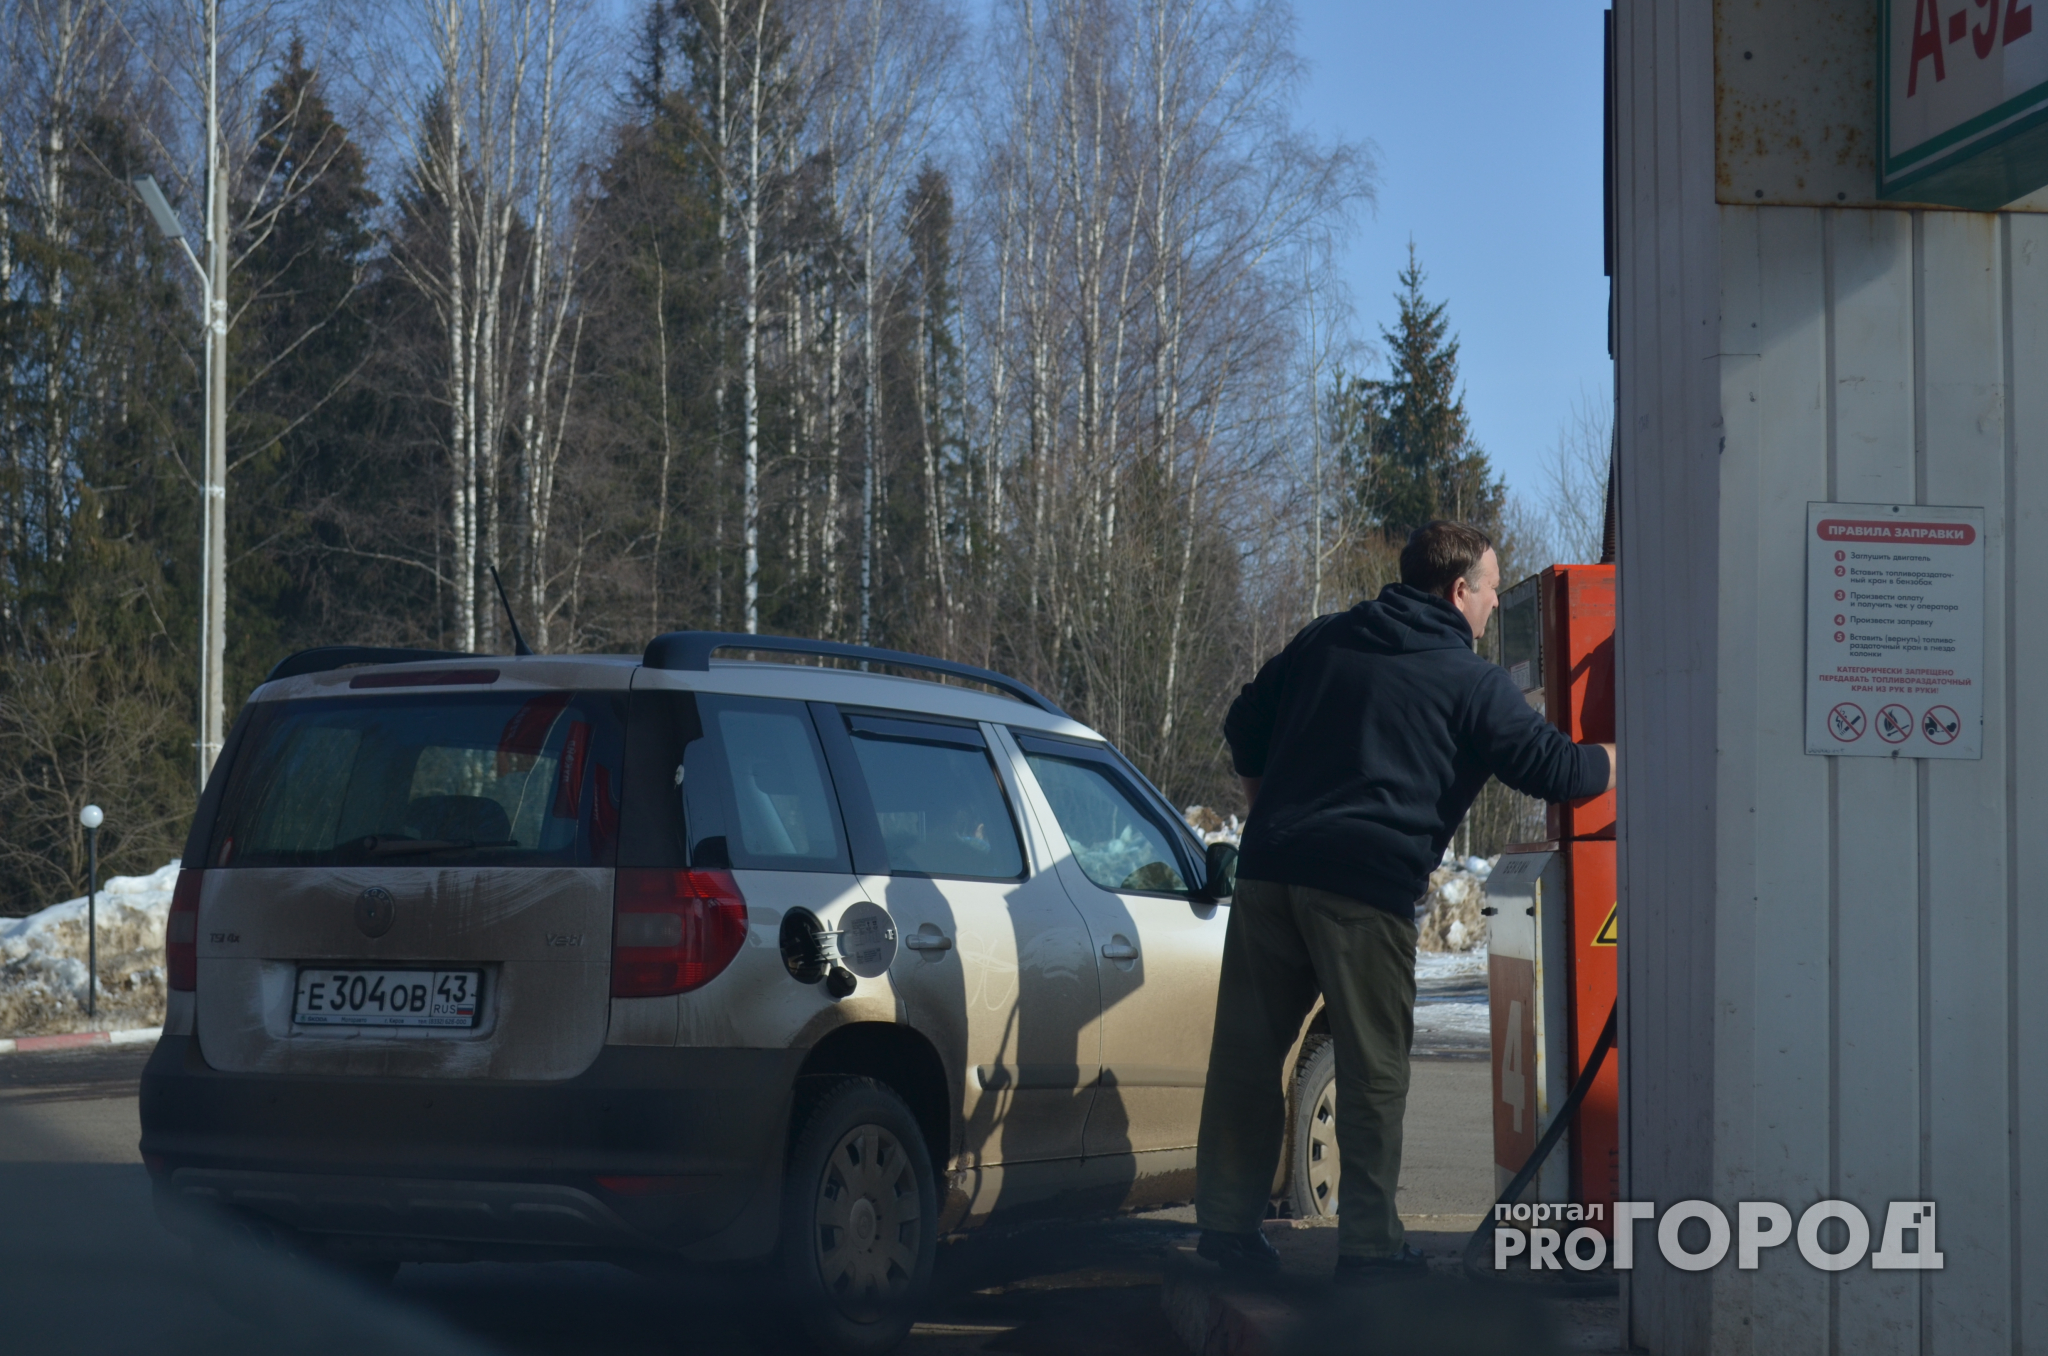 Машины жителей Башмакова глохнут после заправки на АЗС у кладбища